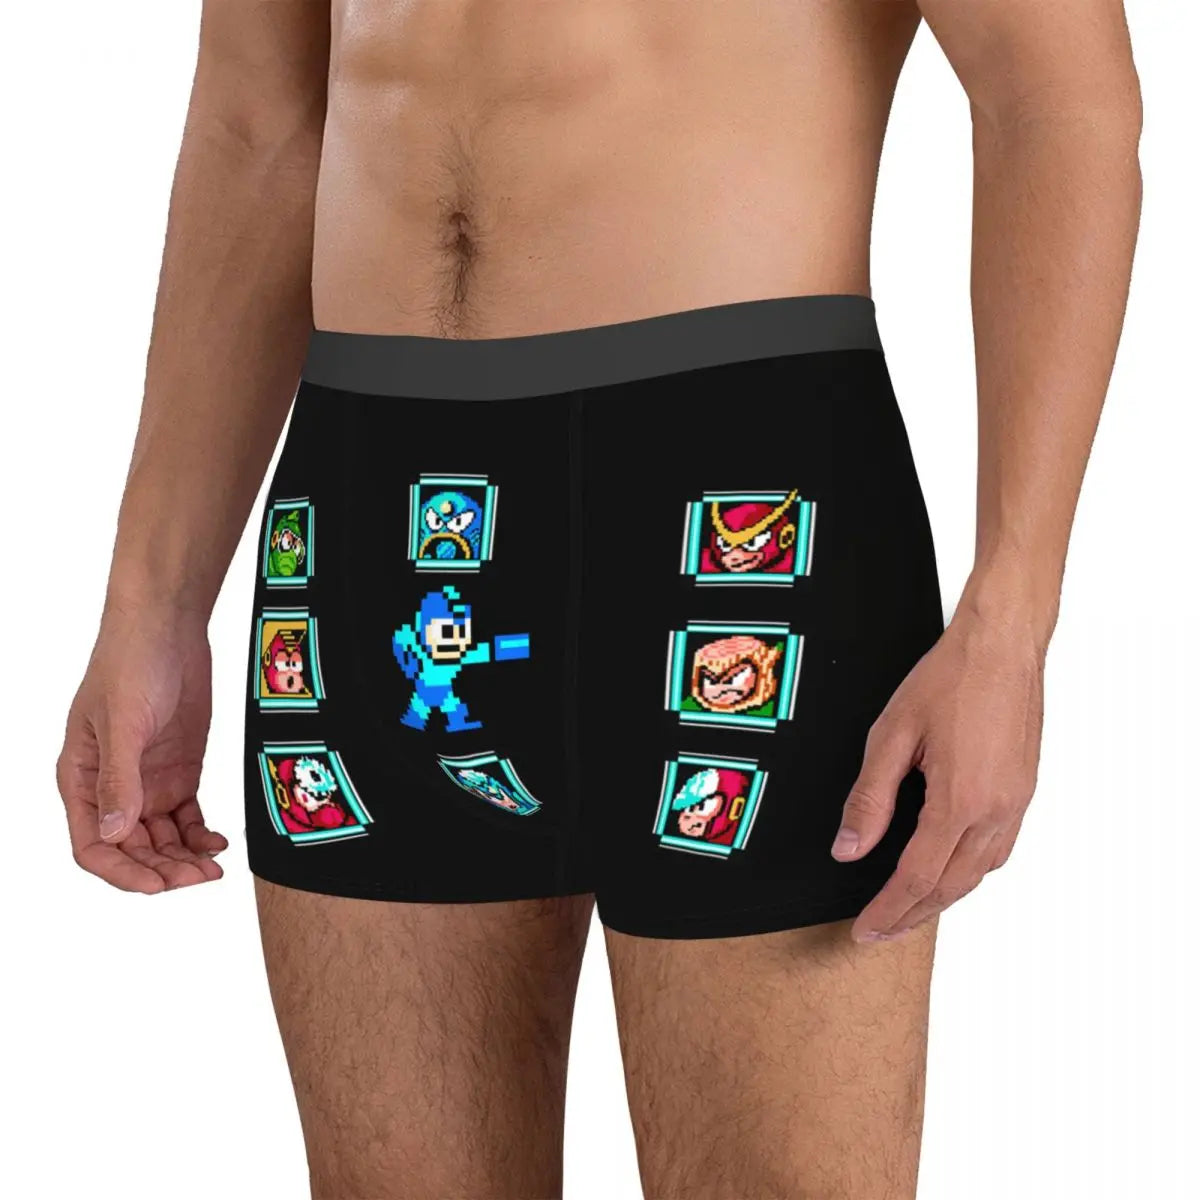 Hommes Mega Man jeu vidéo sous-vêtements nouveauté Boxer Shorts culottes Homme respirant caleçon